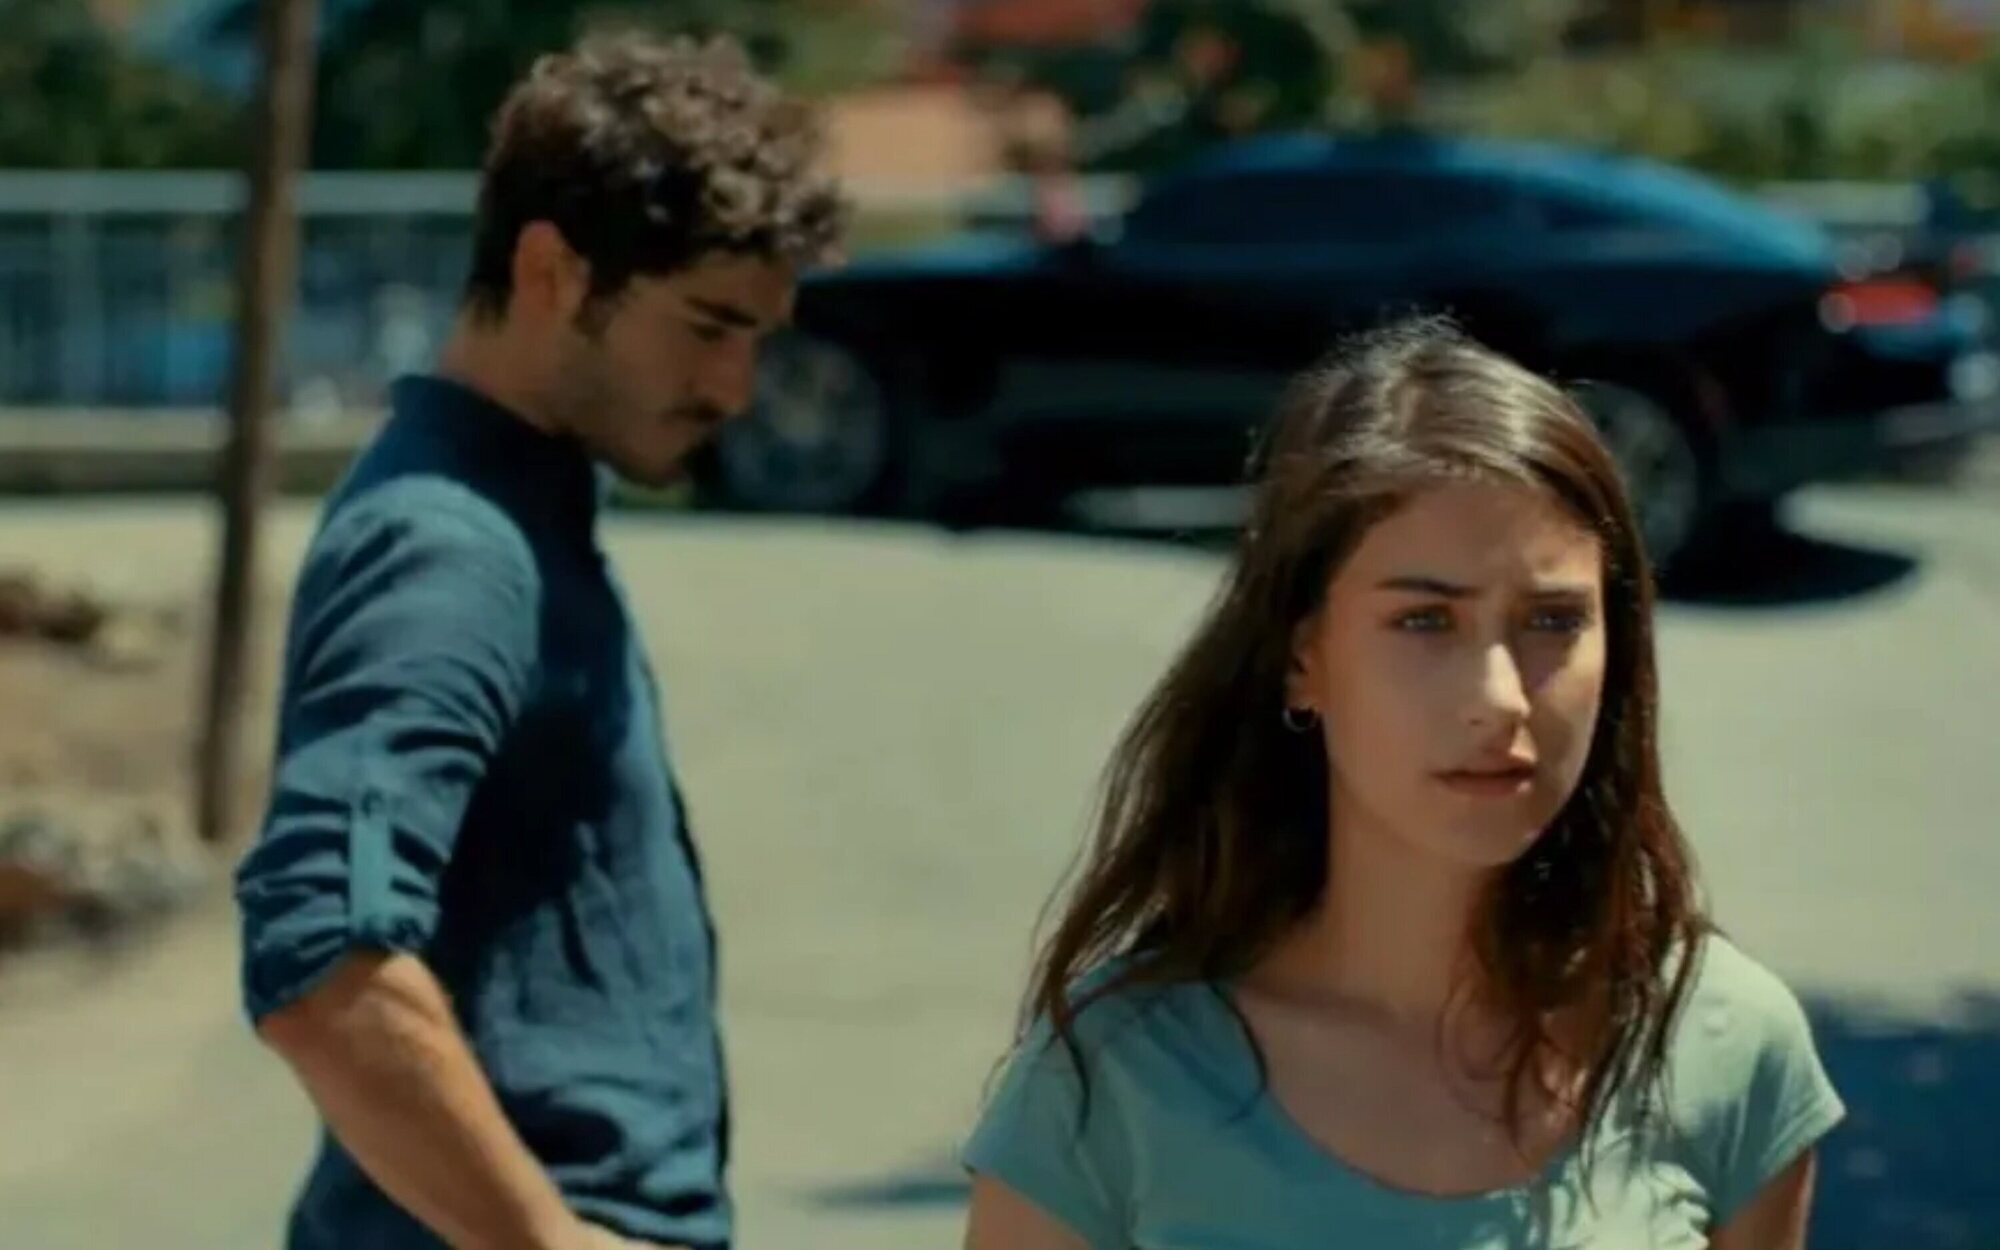 Así es 'Nuestra historia', la nueva serie turca que llegará a Divinity el 12 de julio 